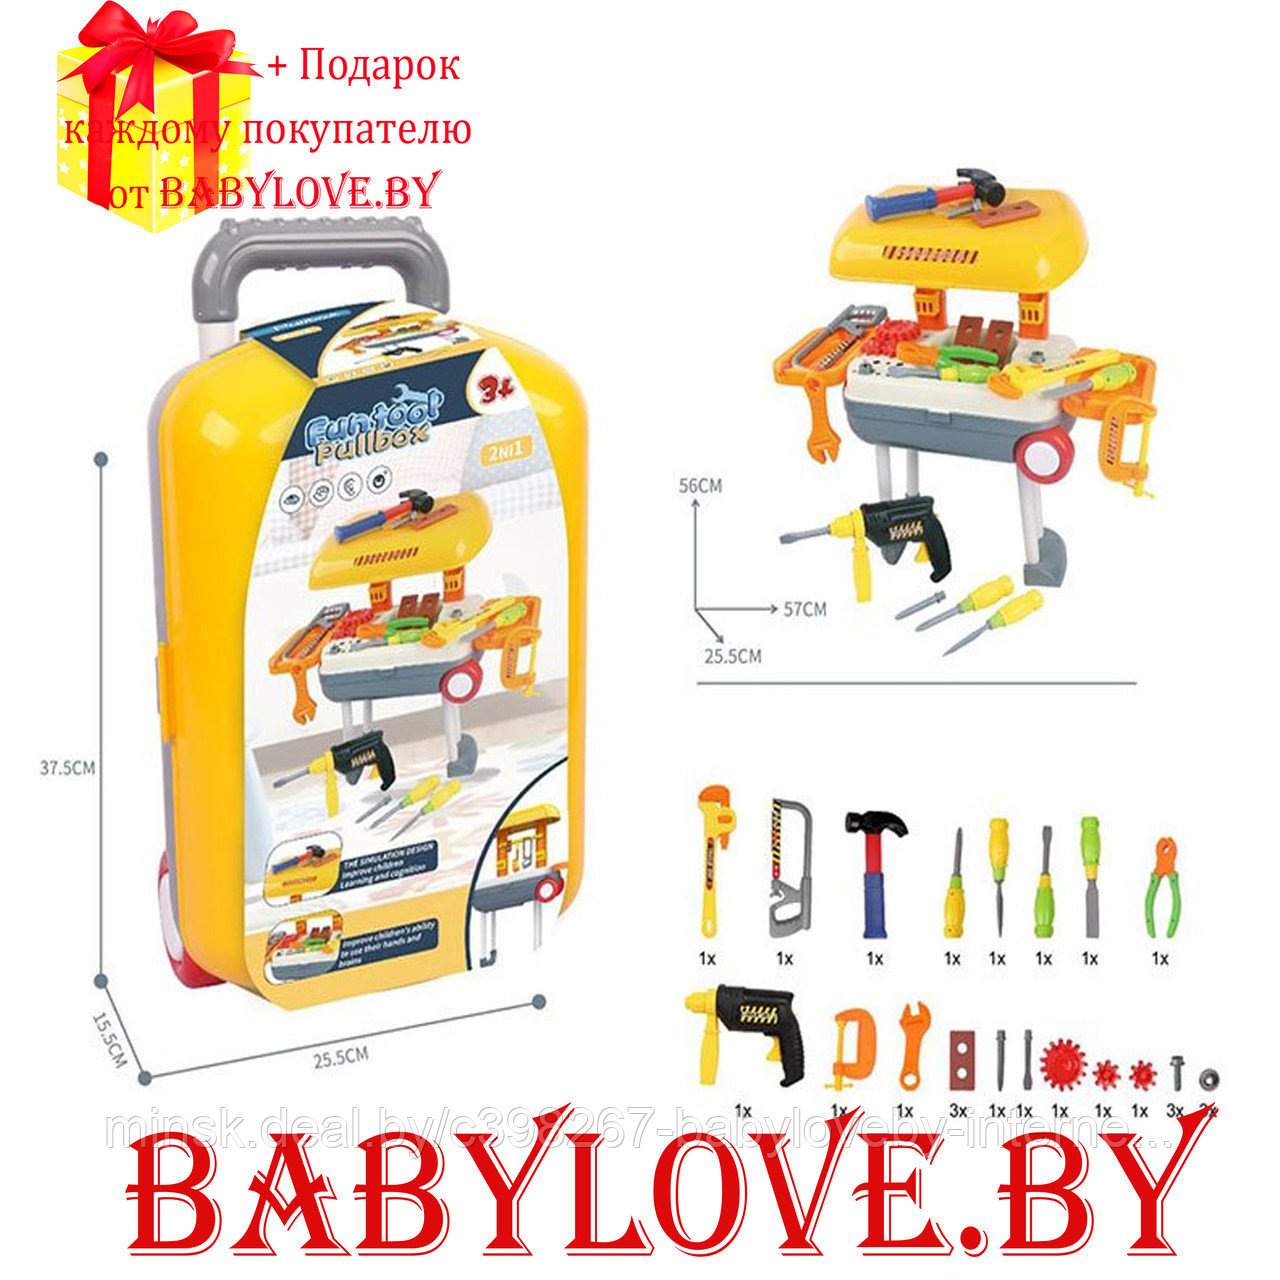 Набор инструментов для мальчика чемодан мастера 26 предметов LY88-4